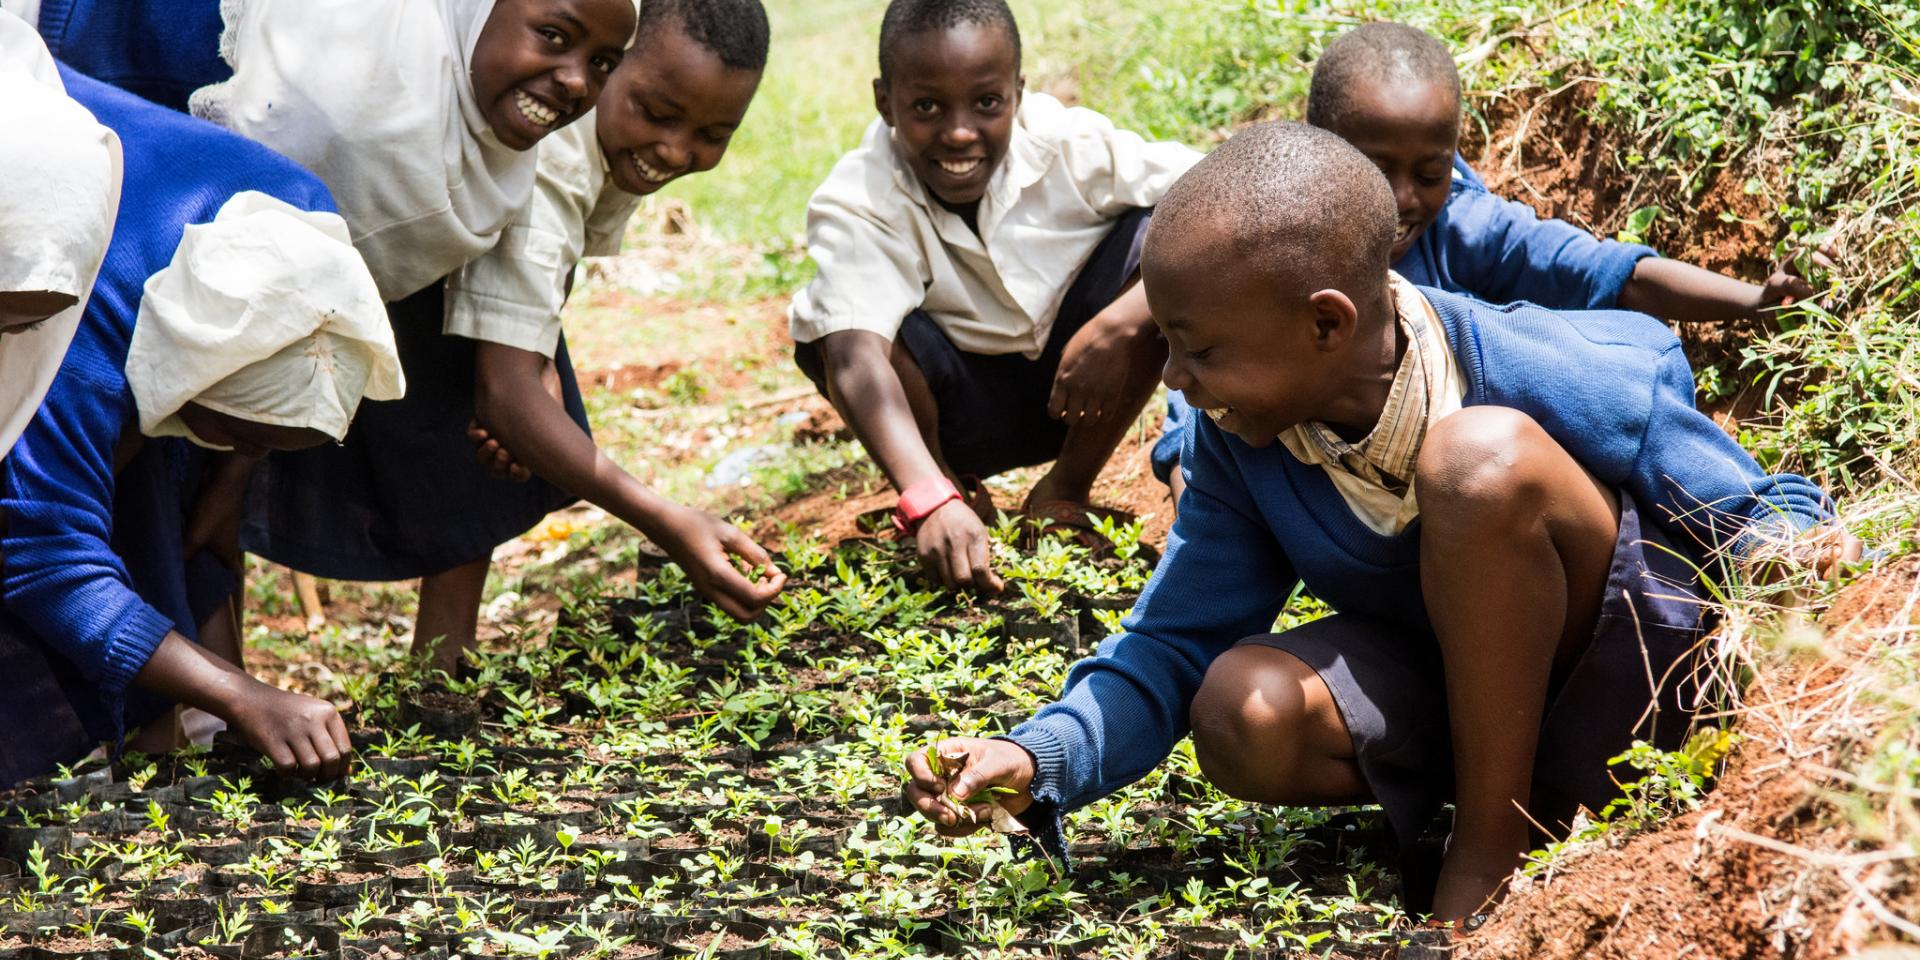 A school near Lushoto, Tanzania, where children are taught reforestation techniques